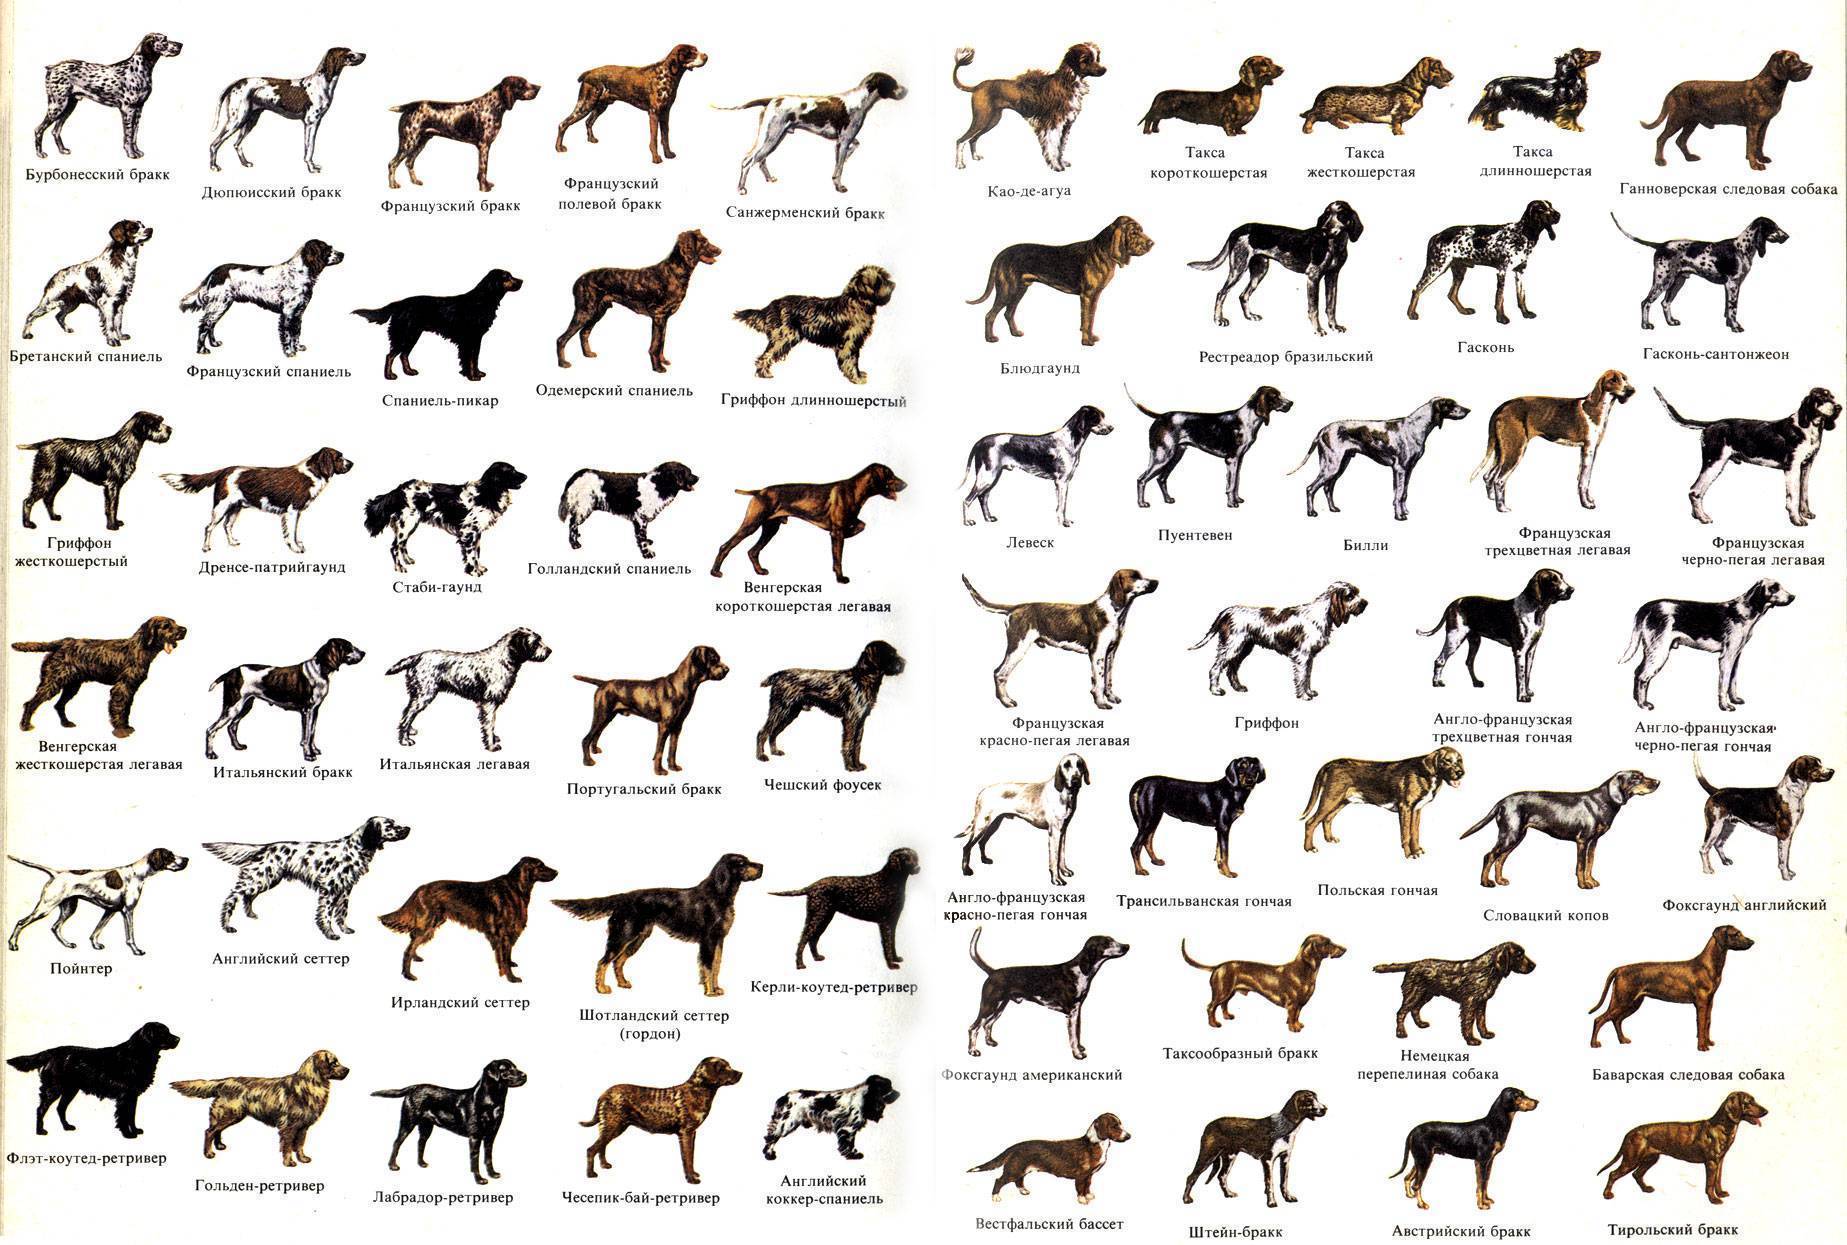 Средние породы собак: фото с названиями
средние породы собак: фото с названиями